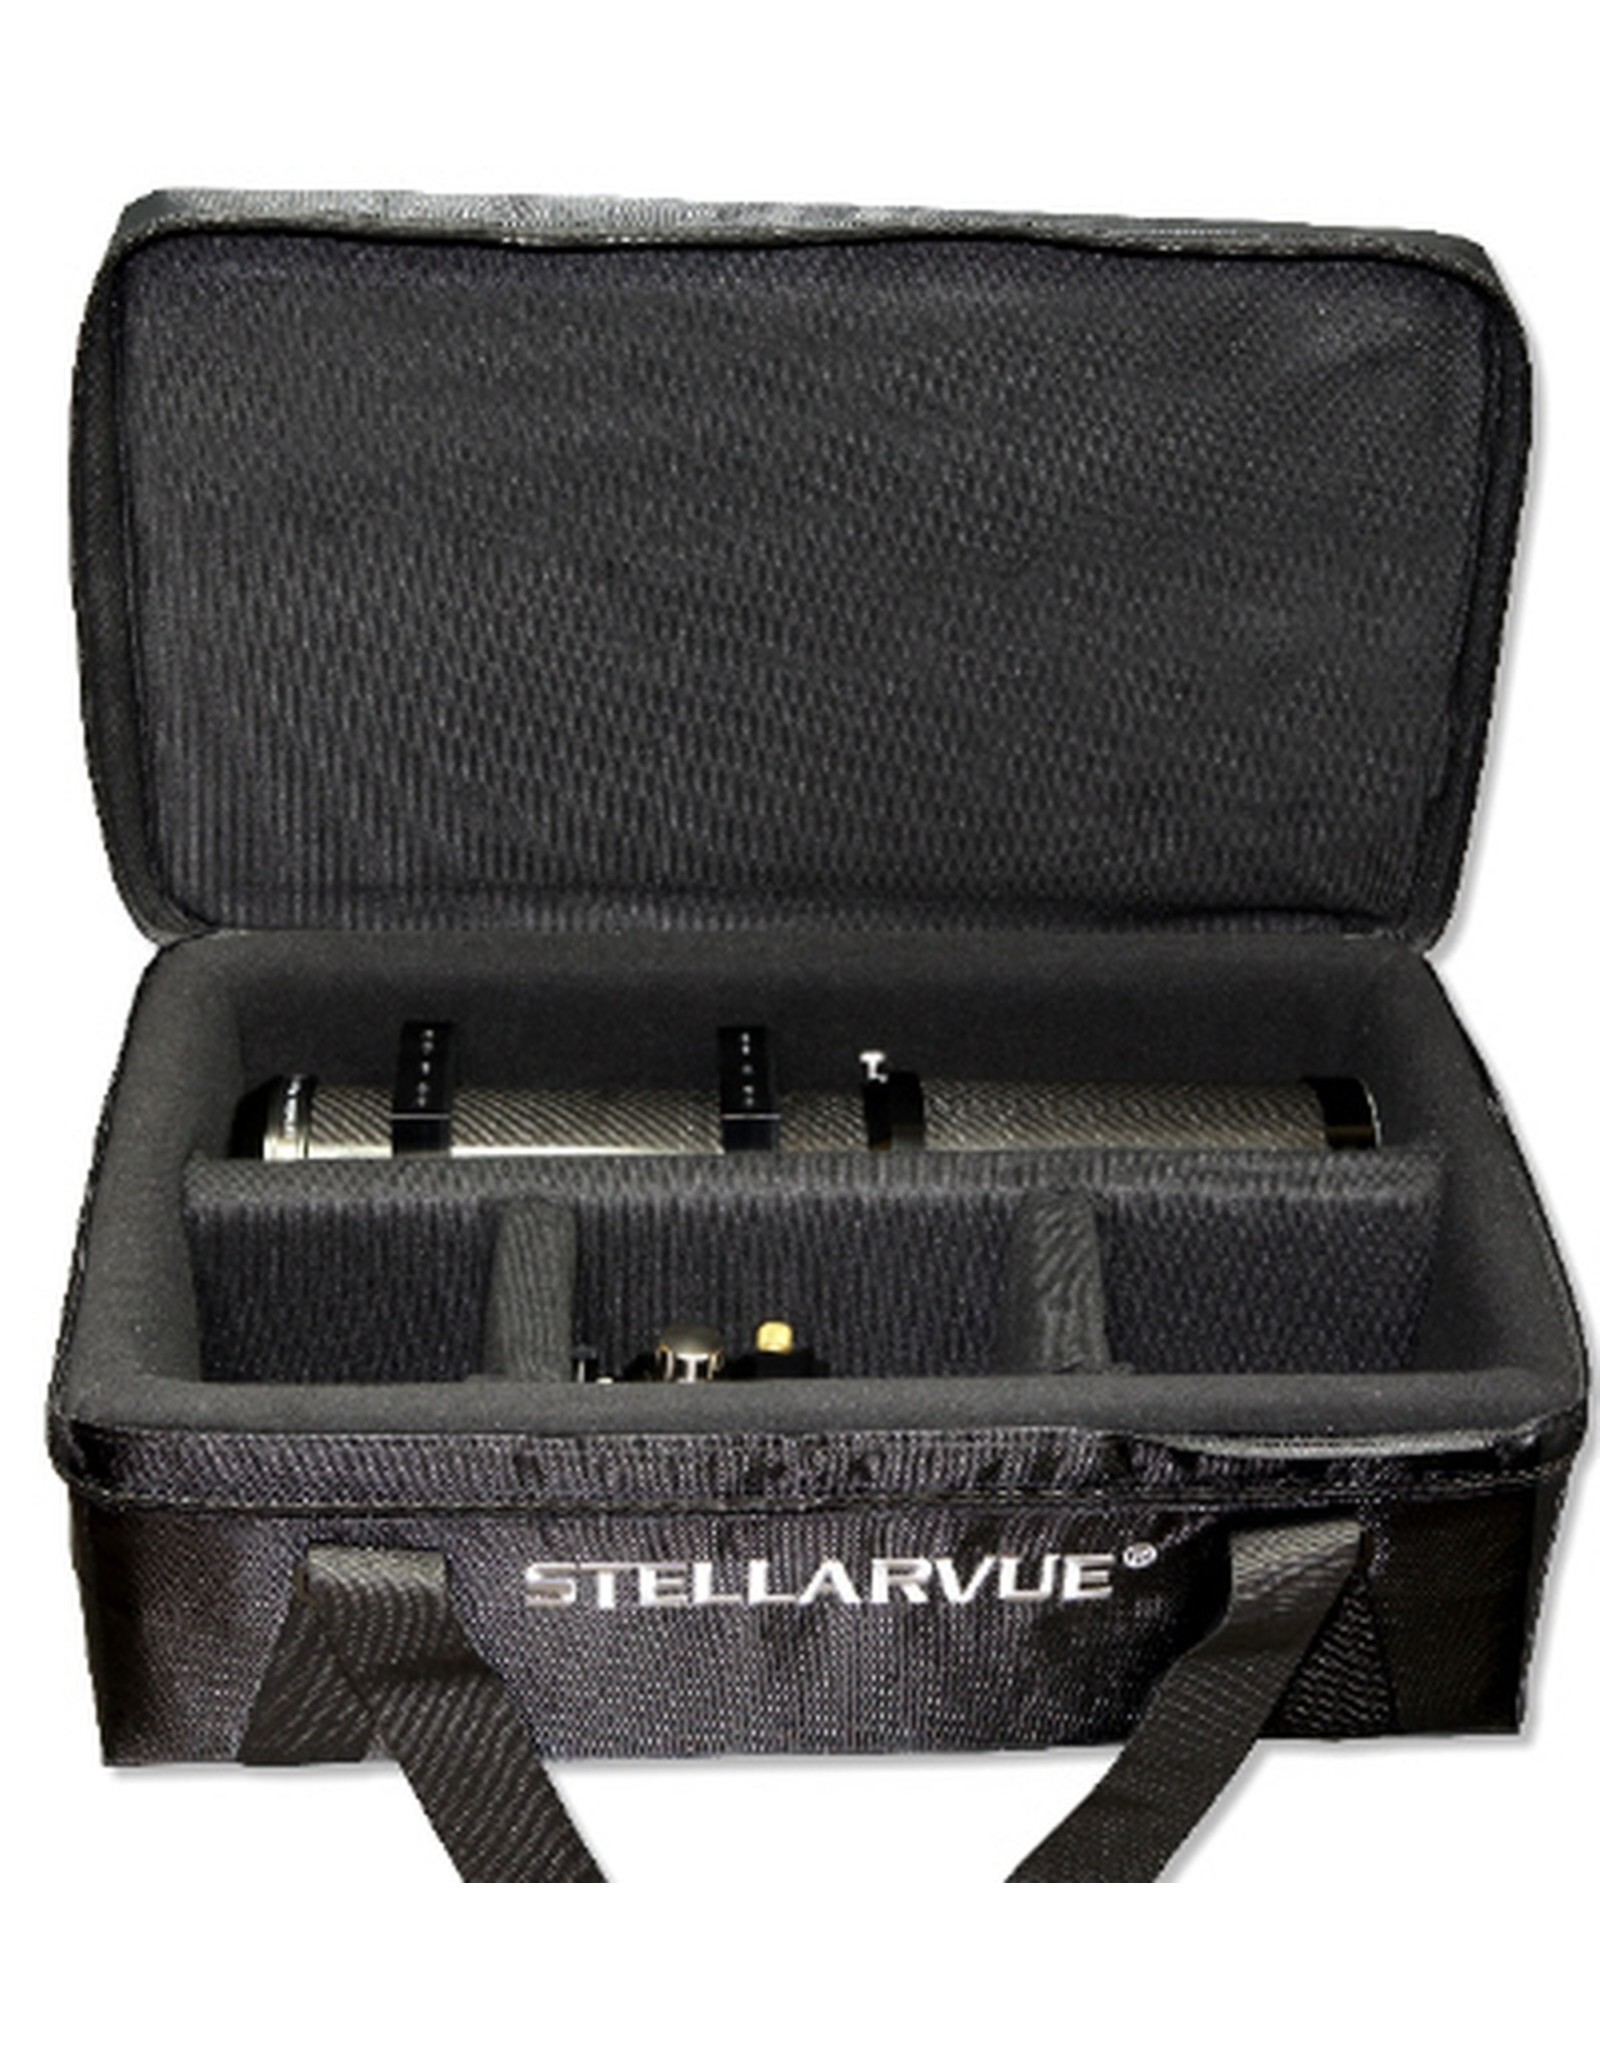 Stellarvue Stellarvue C19 Telescope Case for Stellarvue 70-90mm Refractors